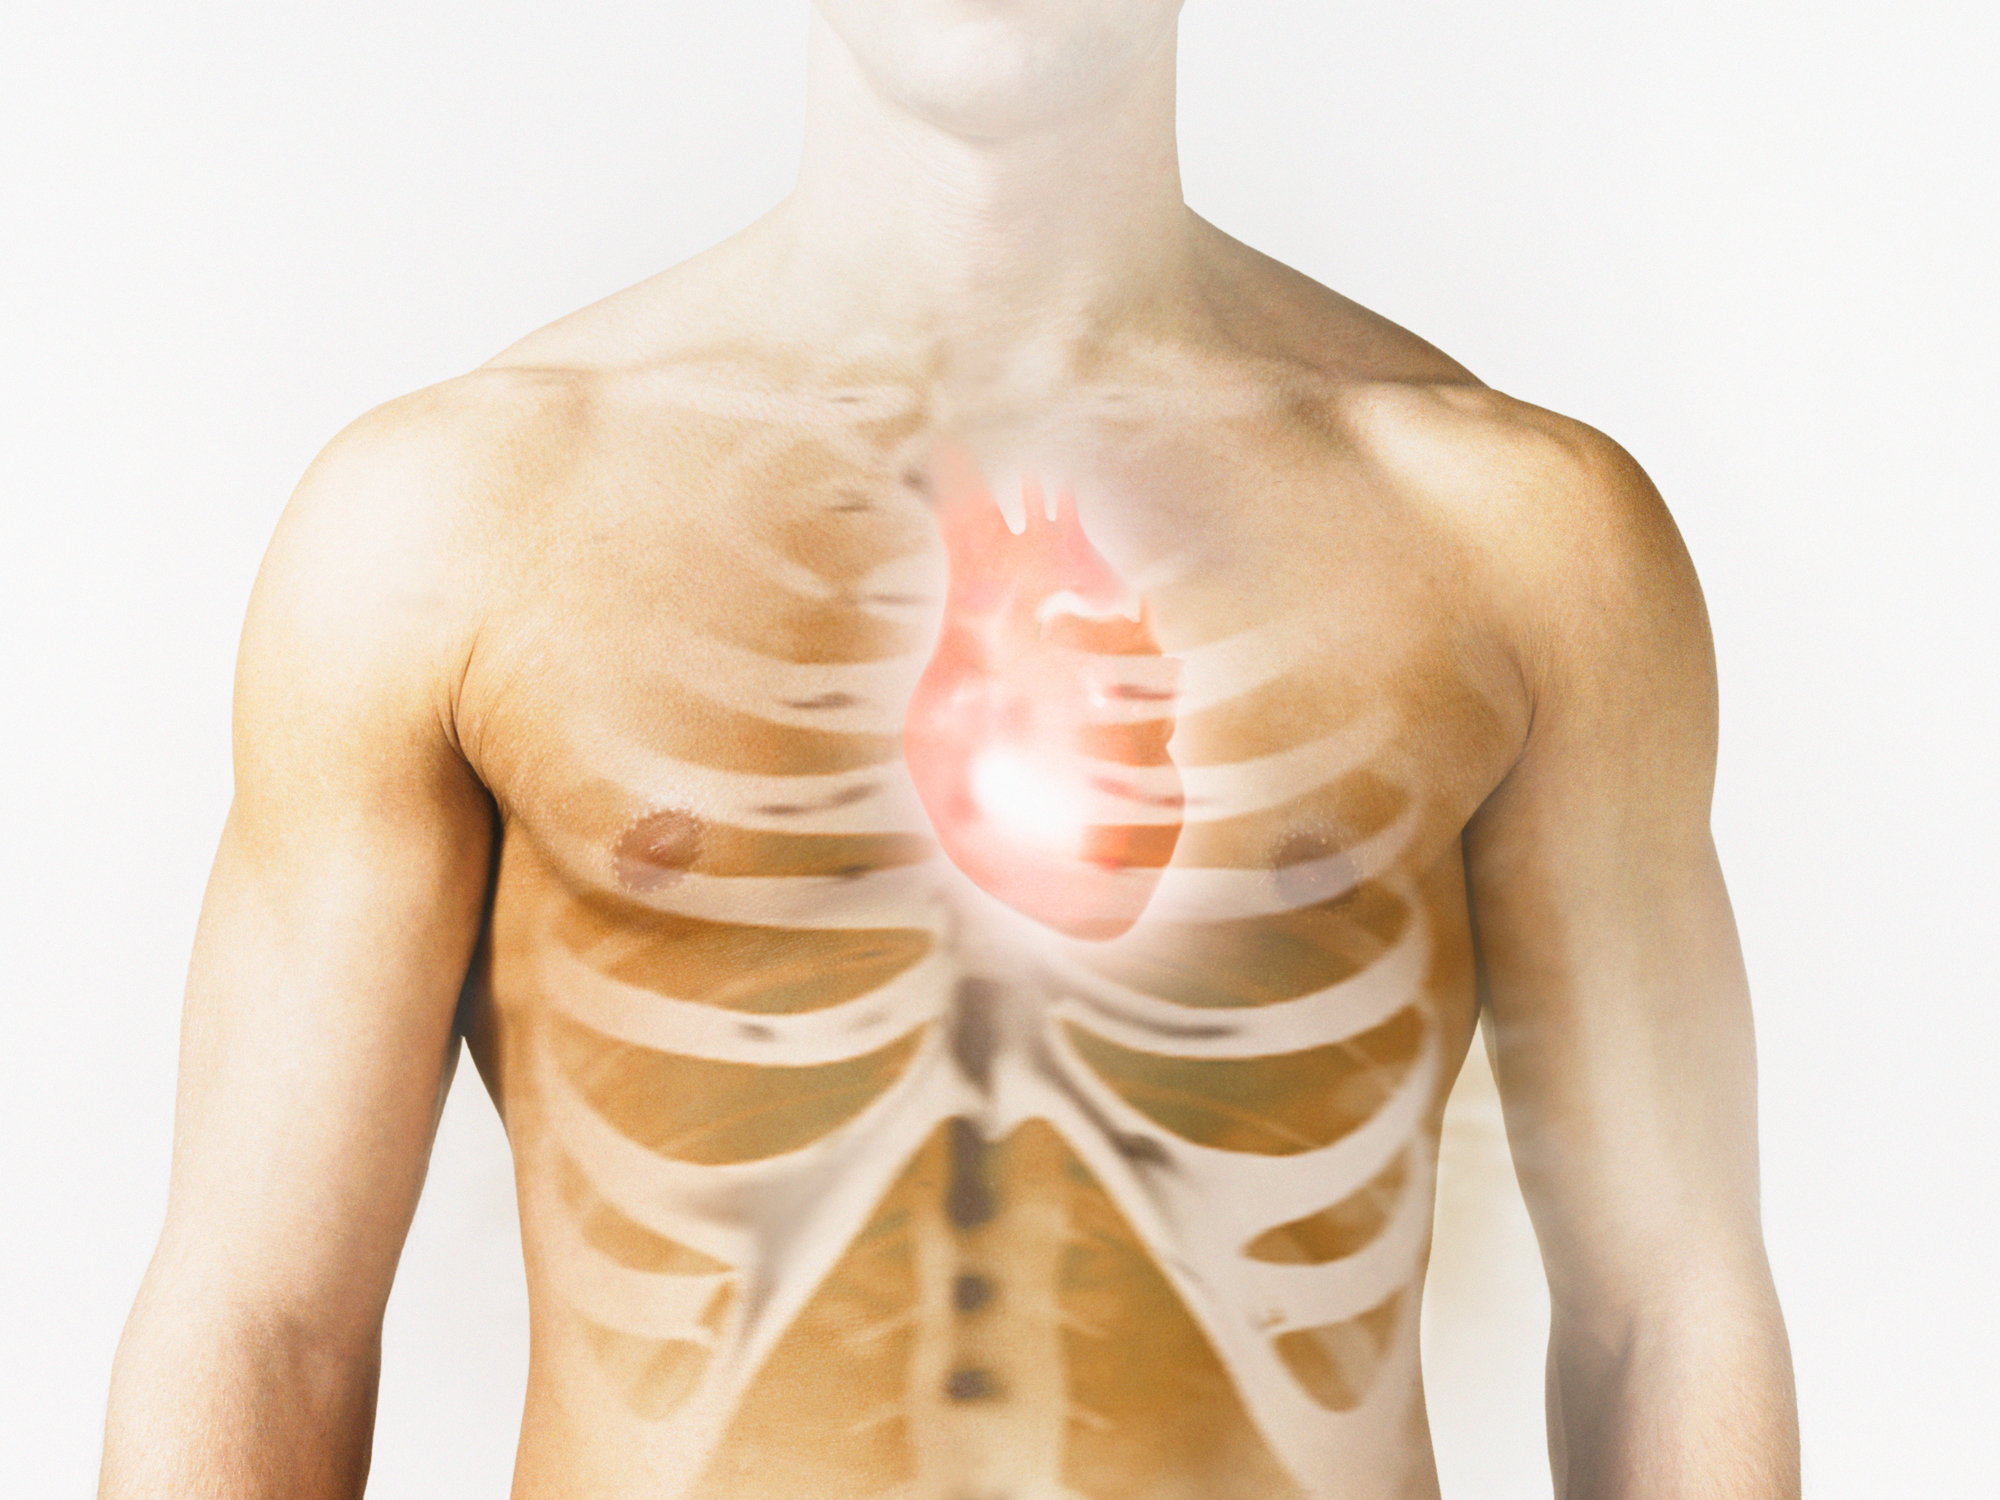 Harden your bones — not your heart